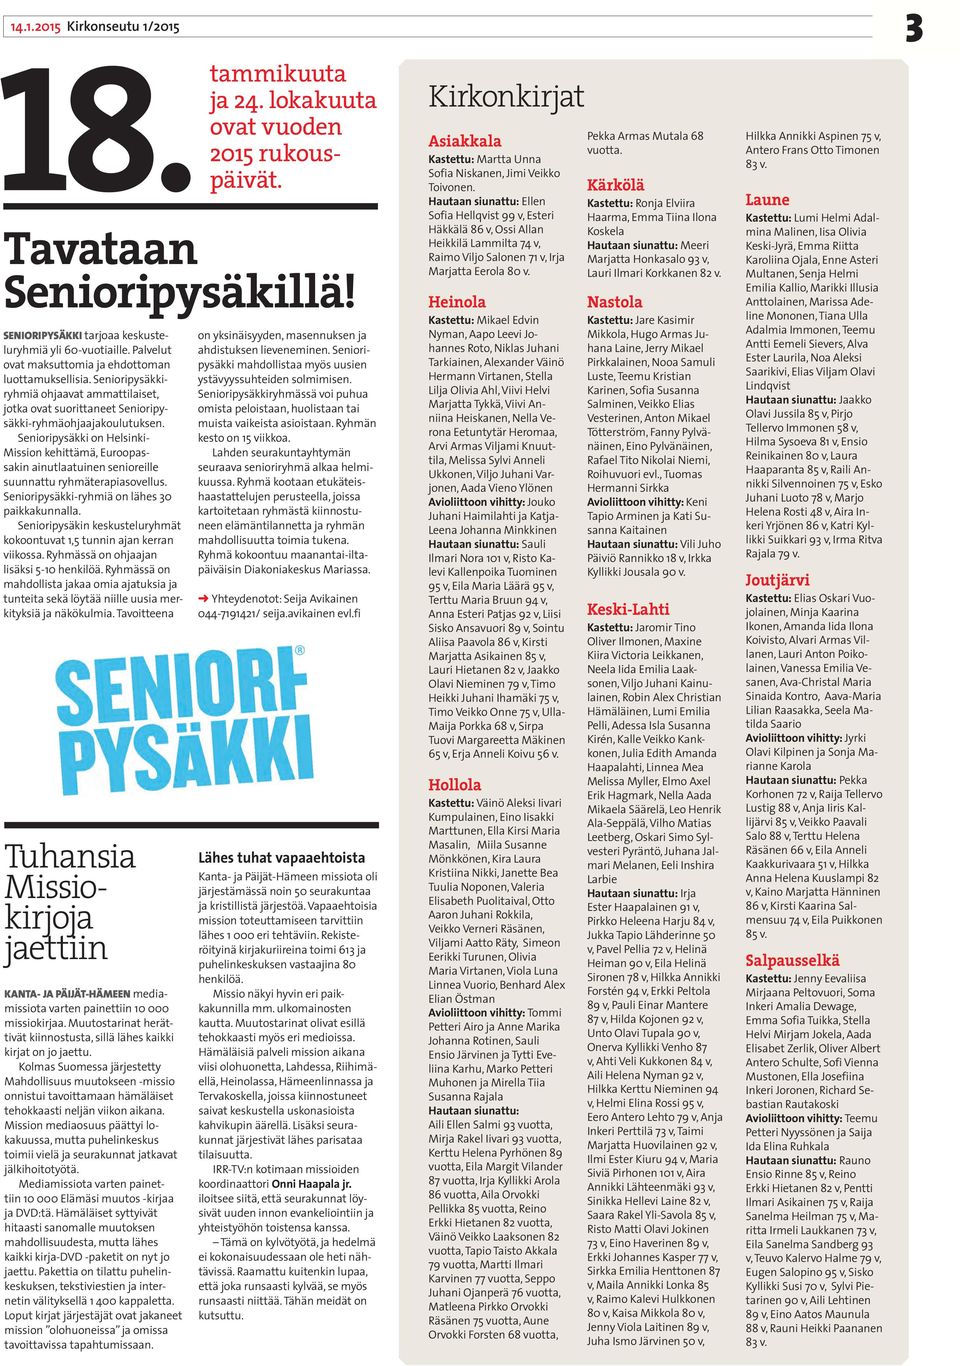 Senioripysäkki on Helsinki- Mission kehittämä, Euroopassakin ainutlaatuinen senioreille suunnattu ryhmäterapiasovellus. Senioripysäkki-ryhmiä on lähes 30 paikkakunnalla.